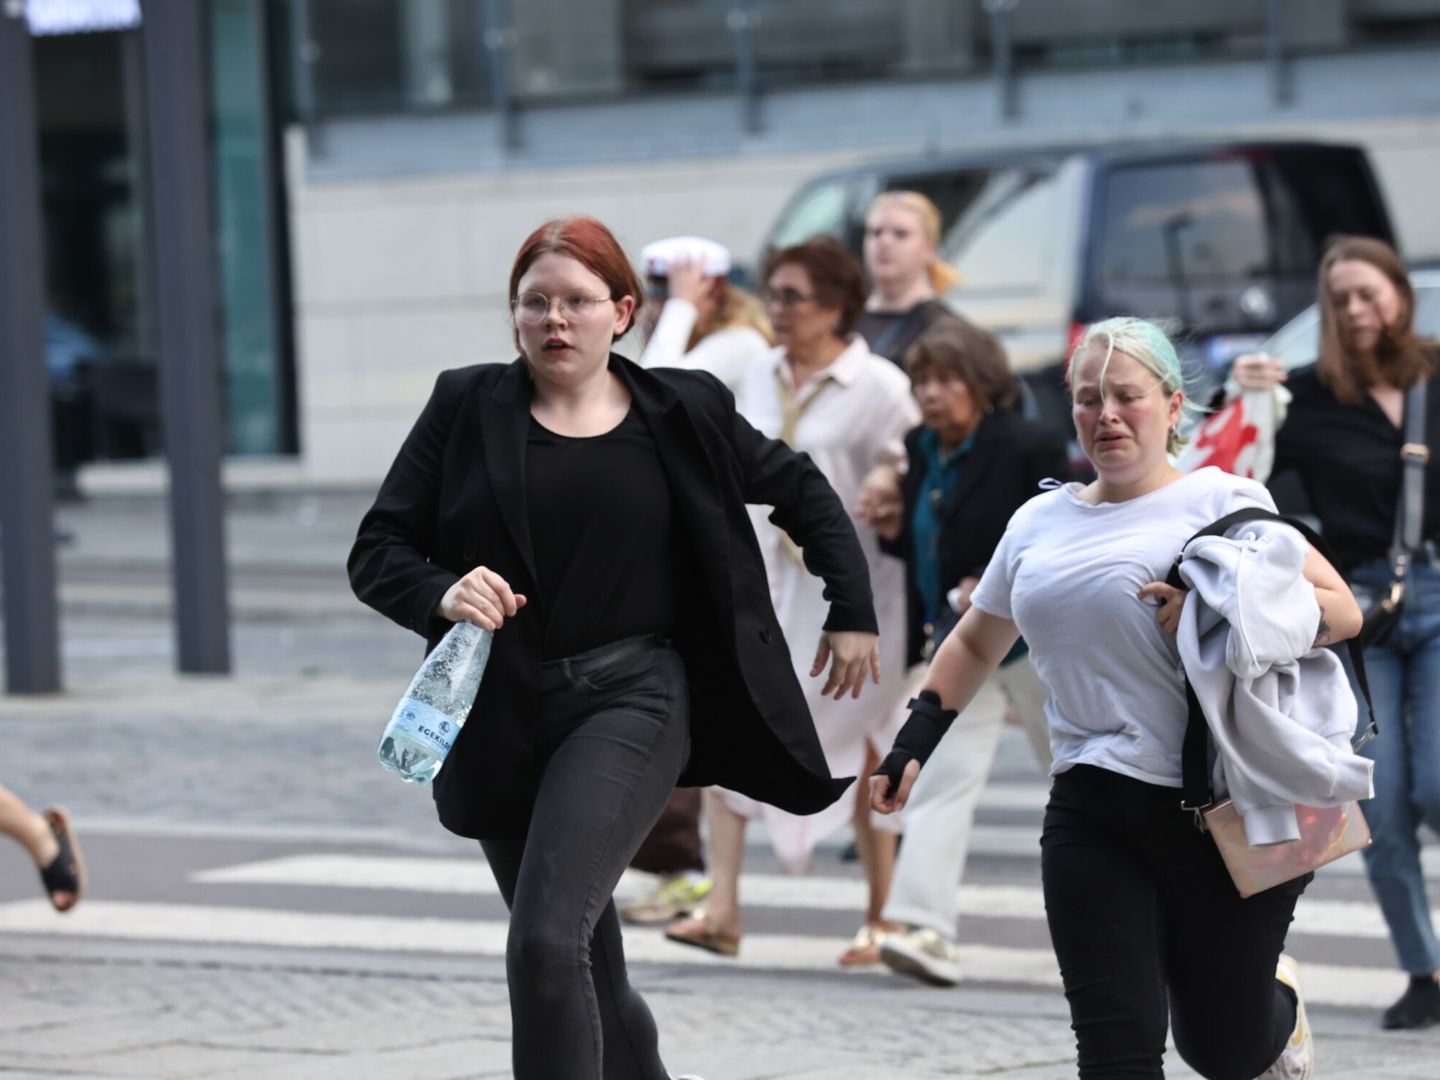 La gente huye del centro comercial tras el tiroteo. (EFE/Olafur Steinar)